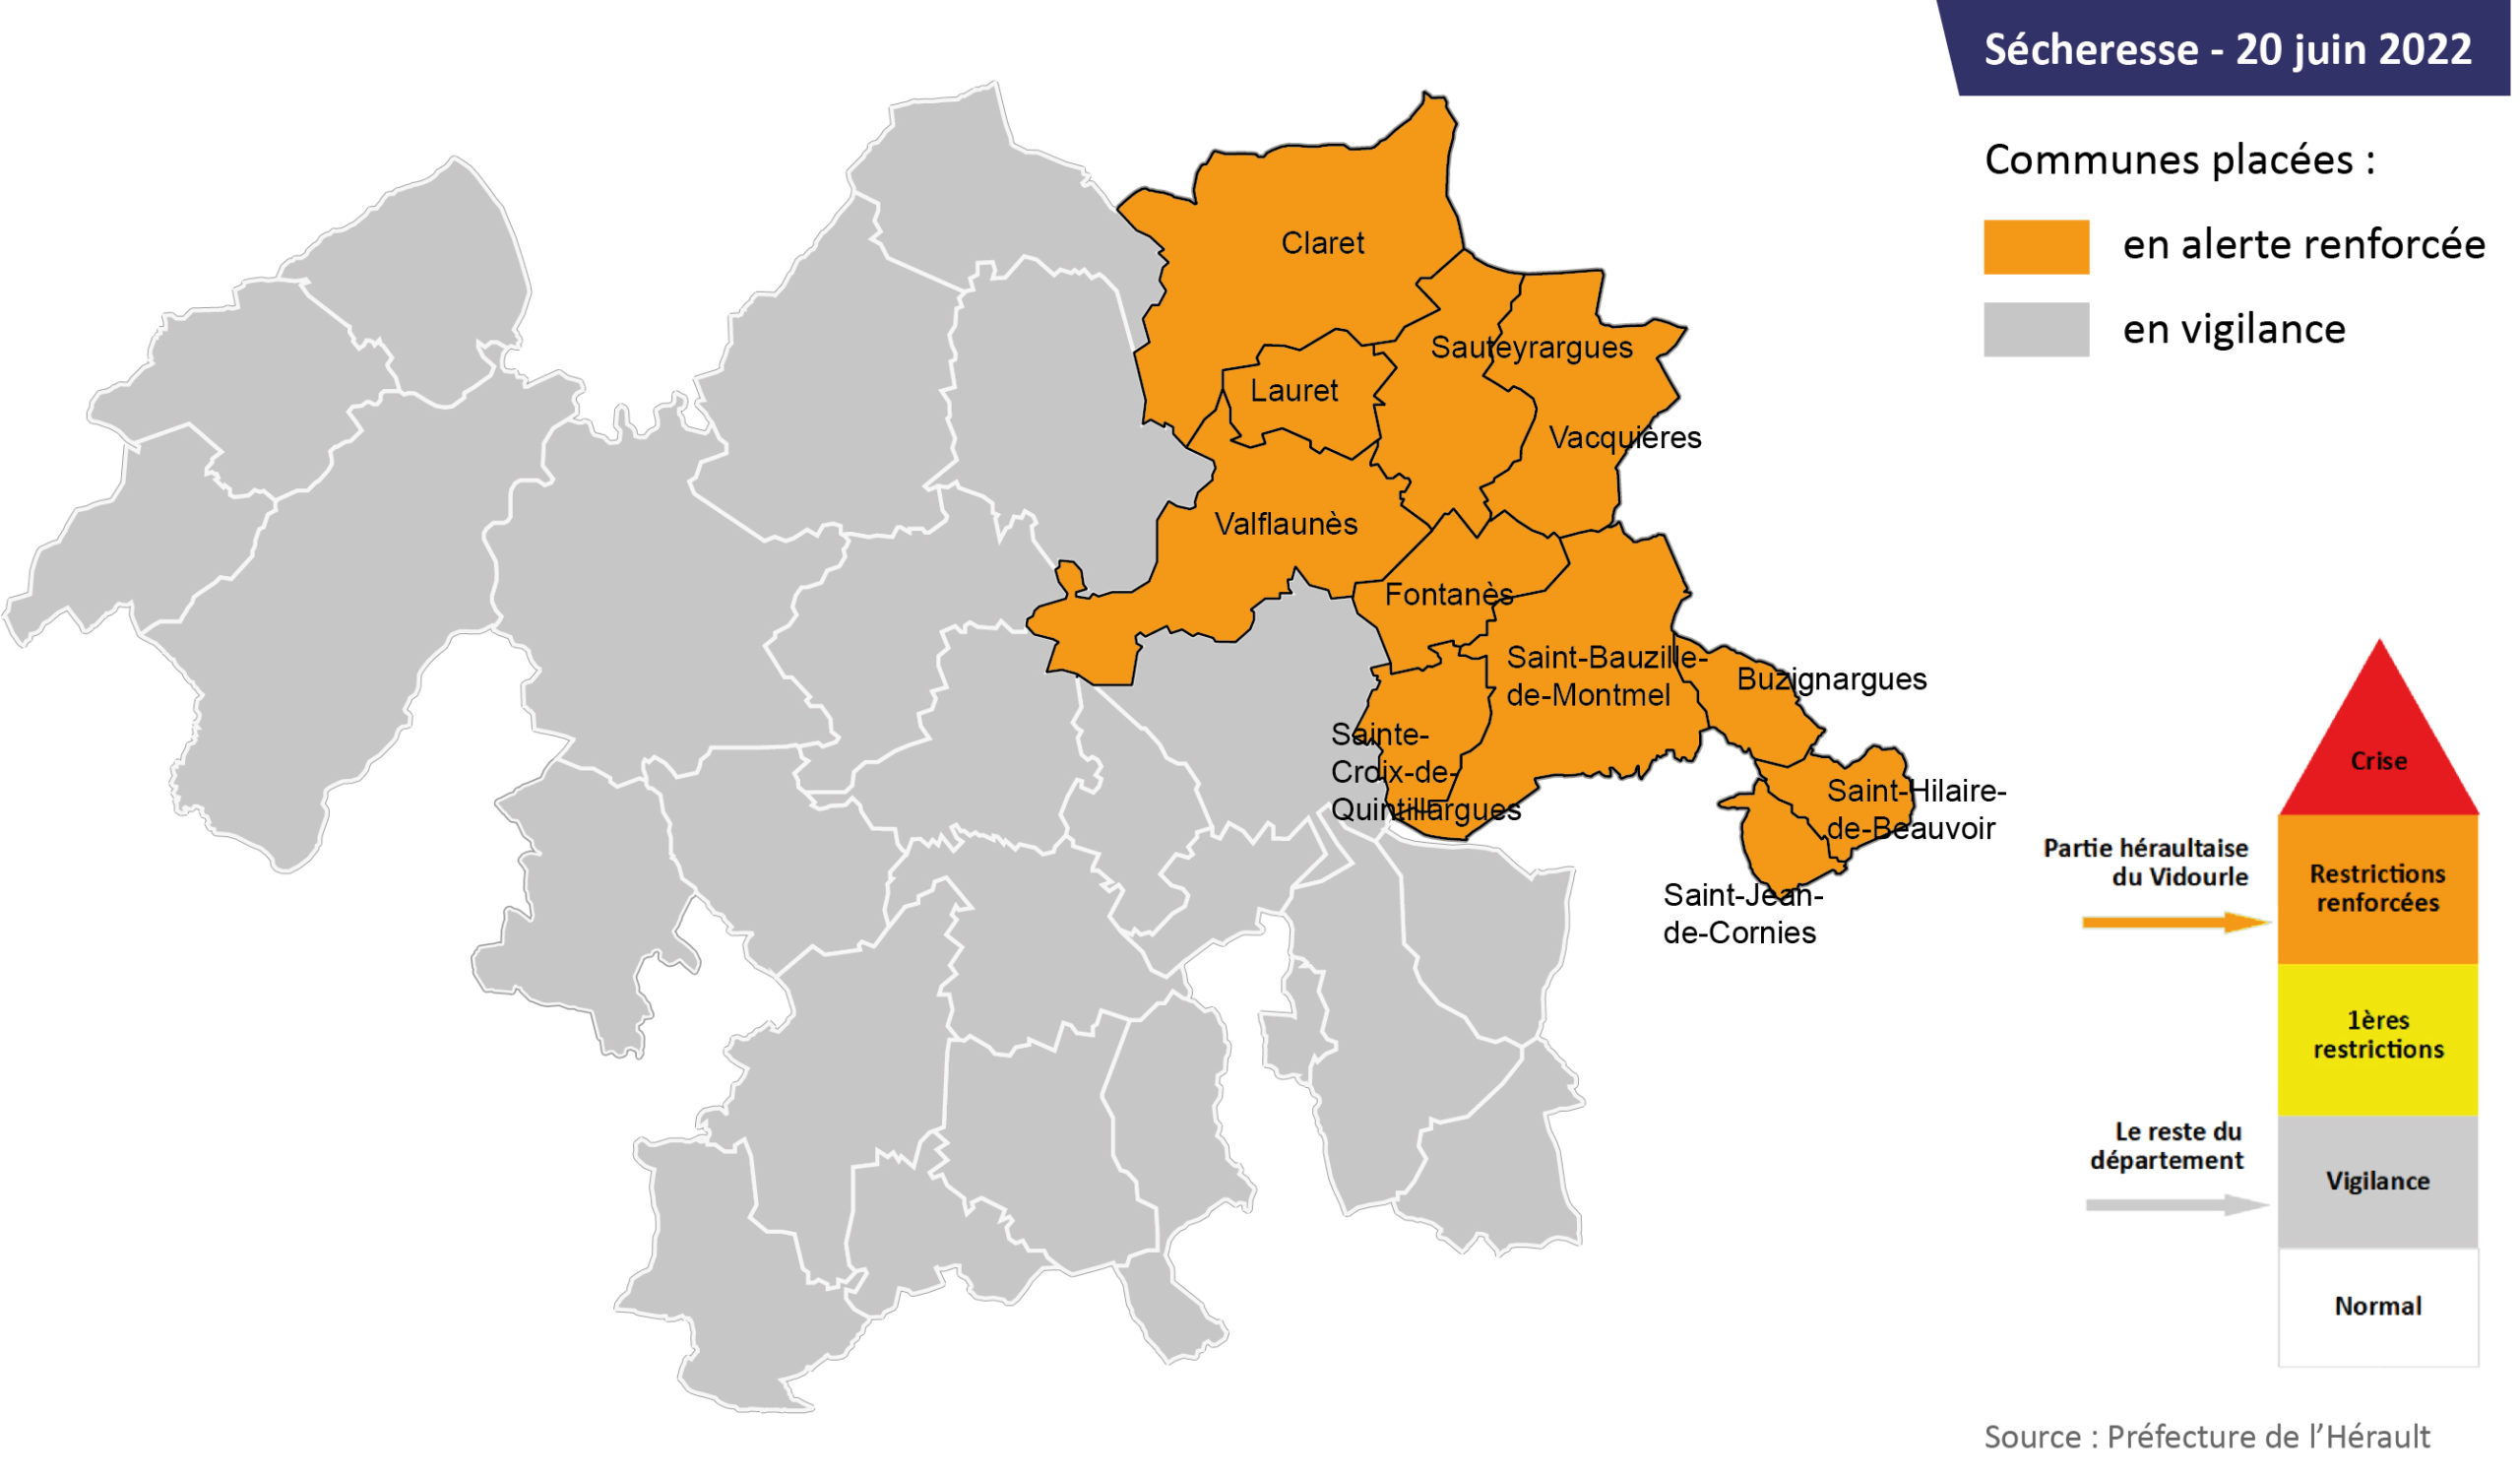 Sécheresse : carte des communes du territoire en alerte renforcée et en vigilance - 20 juin 2022